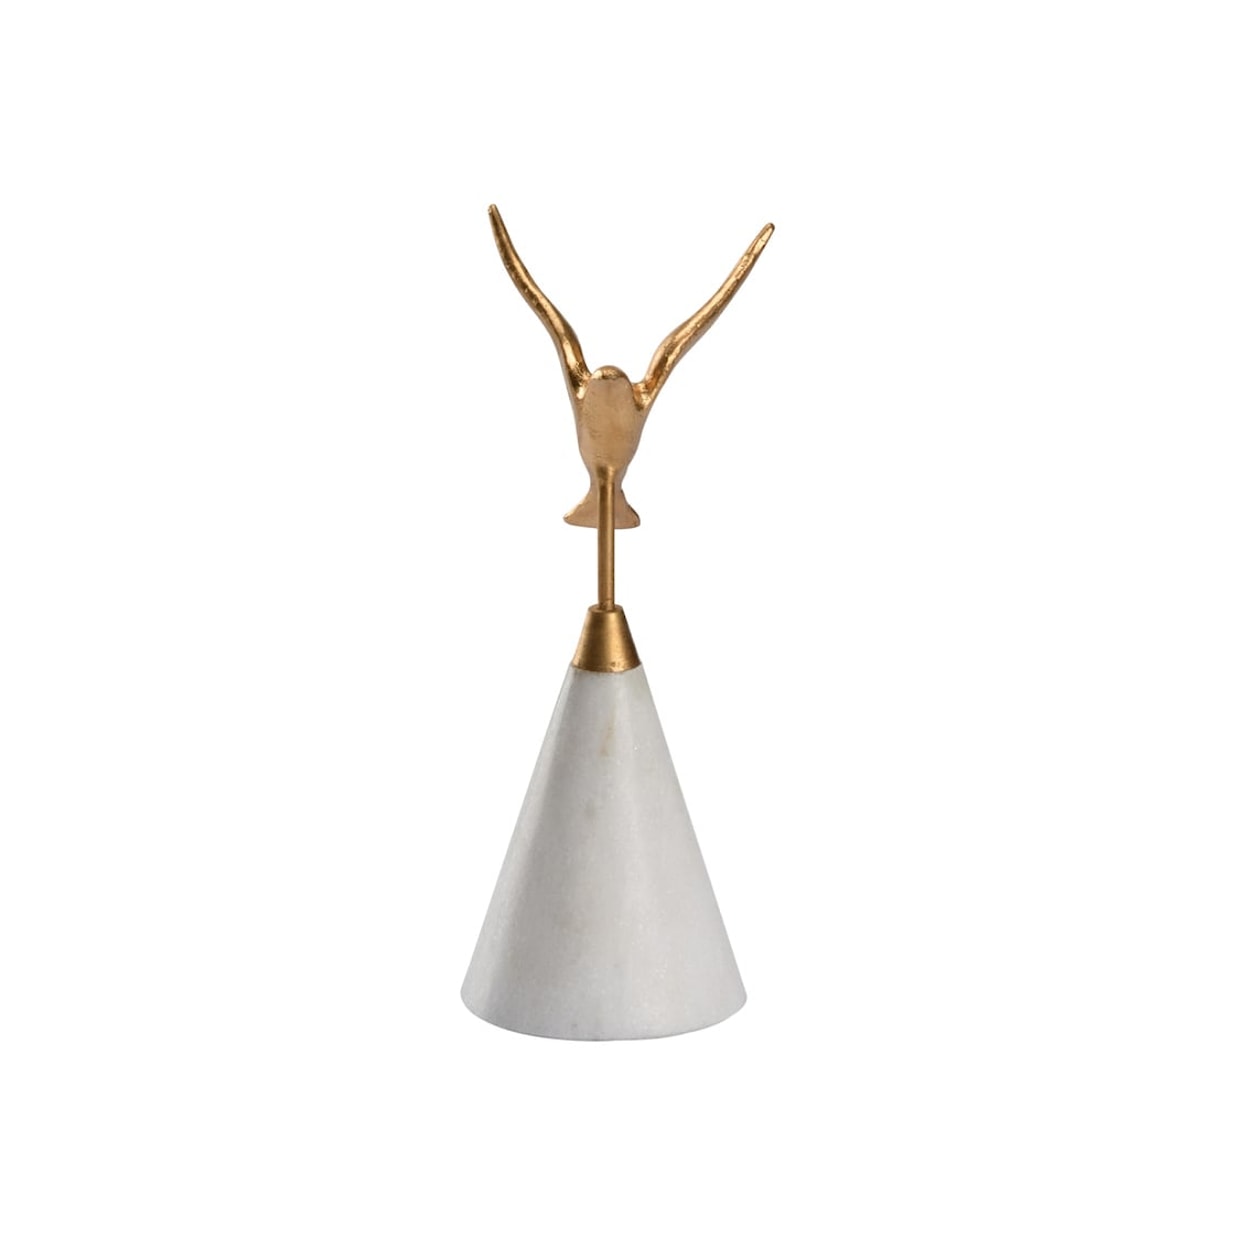 Wildwood Lamps Decorative Accessories Flights Of Fancy Sculpture (Sm)